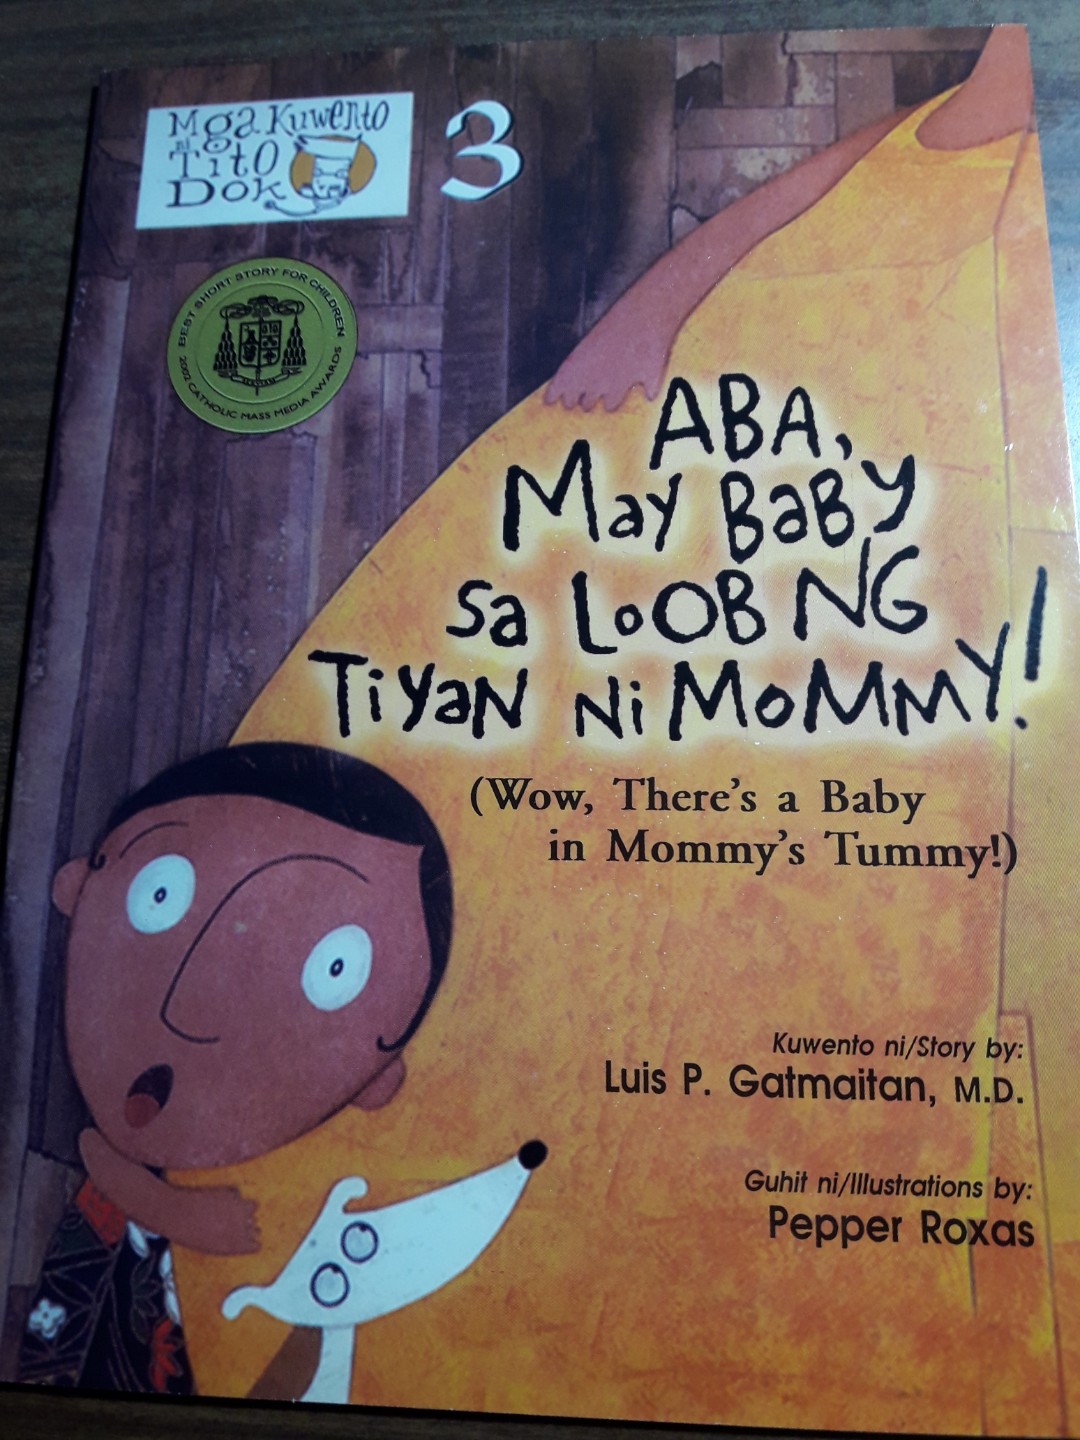 Childrens Book Aba May Baby Sa Loob Ng Tiyan Ni Mommy 1545827550 48800a79 